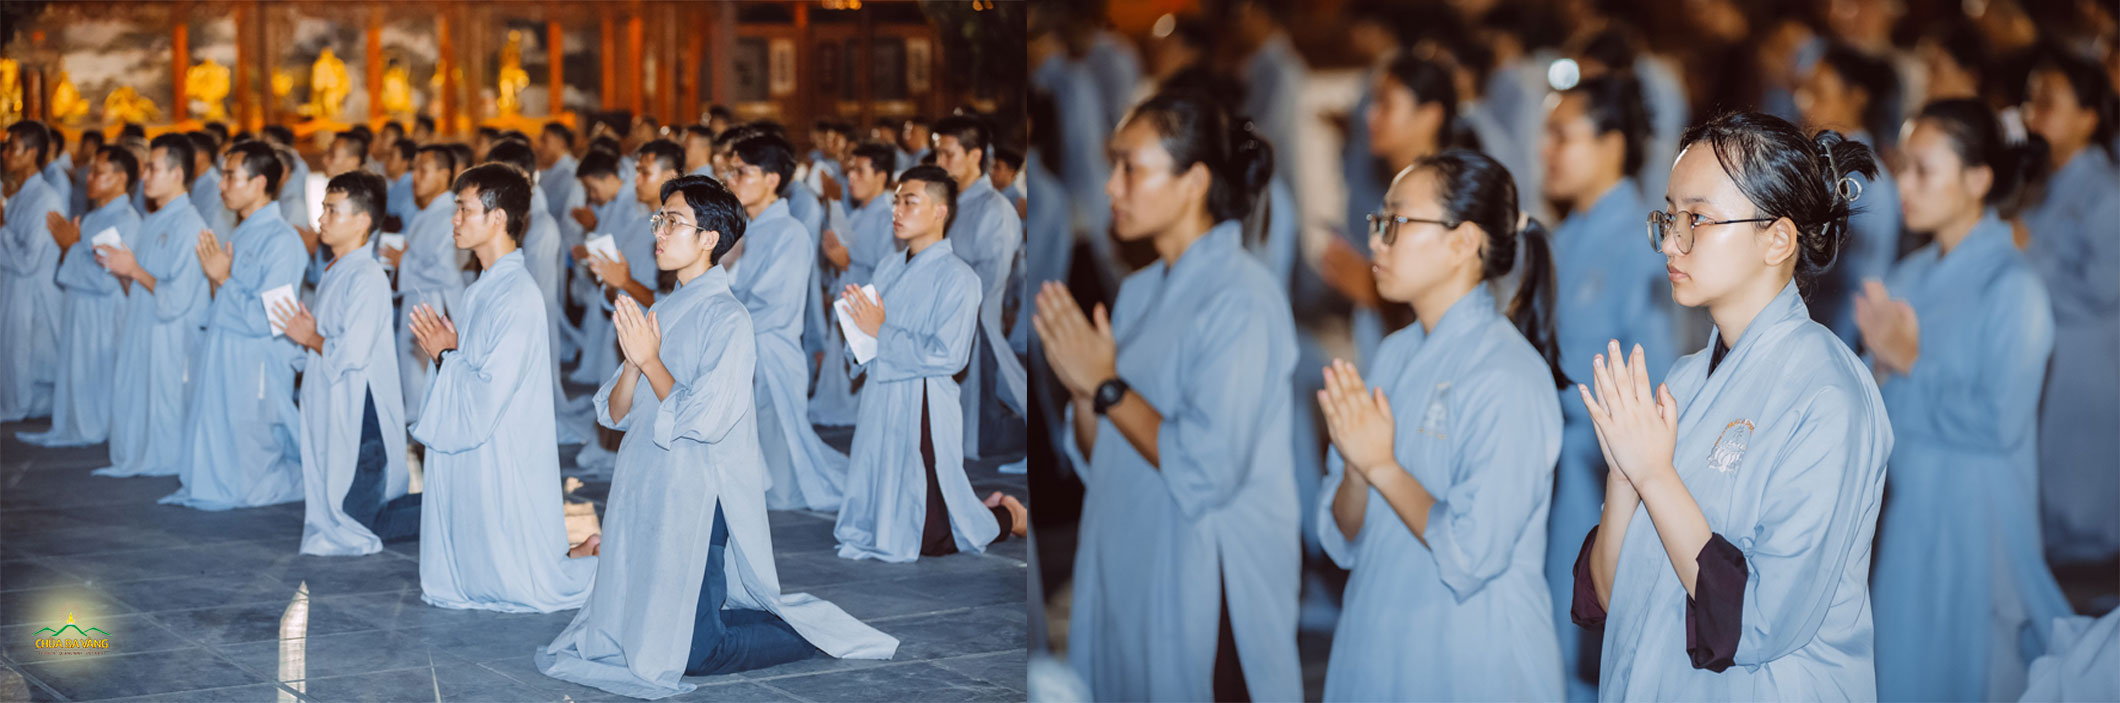 Các Phật tử chắp tay trang nghiêm hướng tâm cầu nguyện hóa giải bệnh sốt xuất huyết